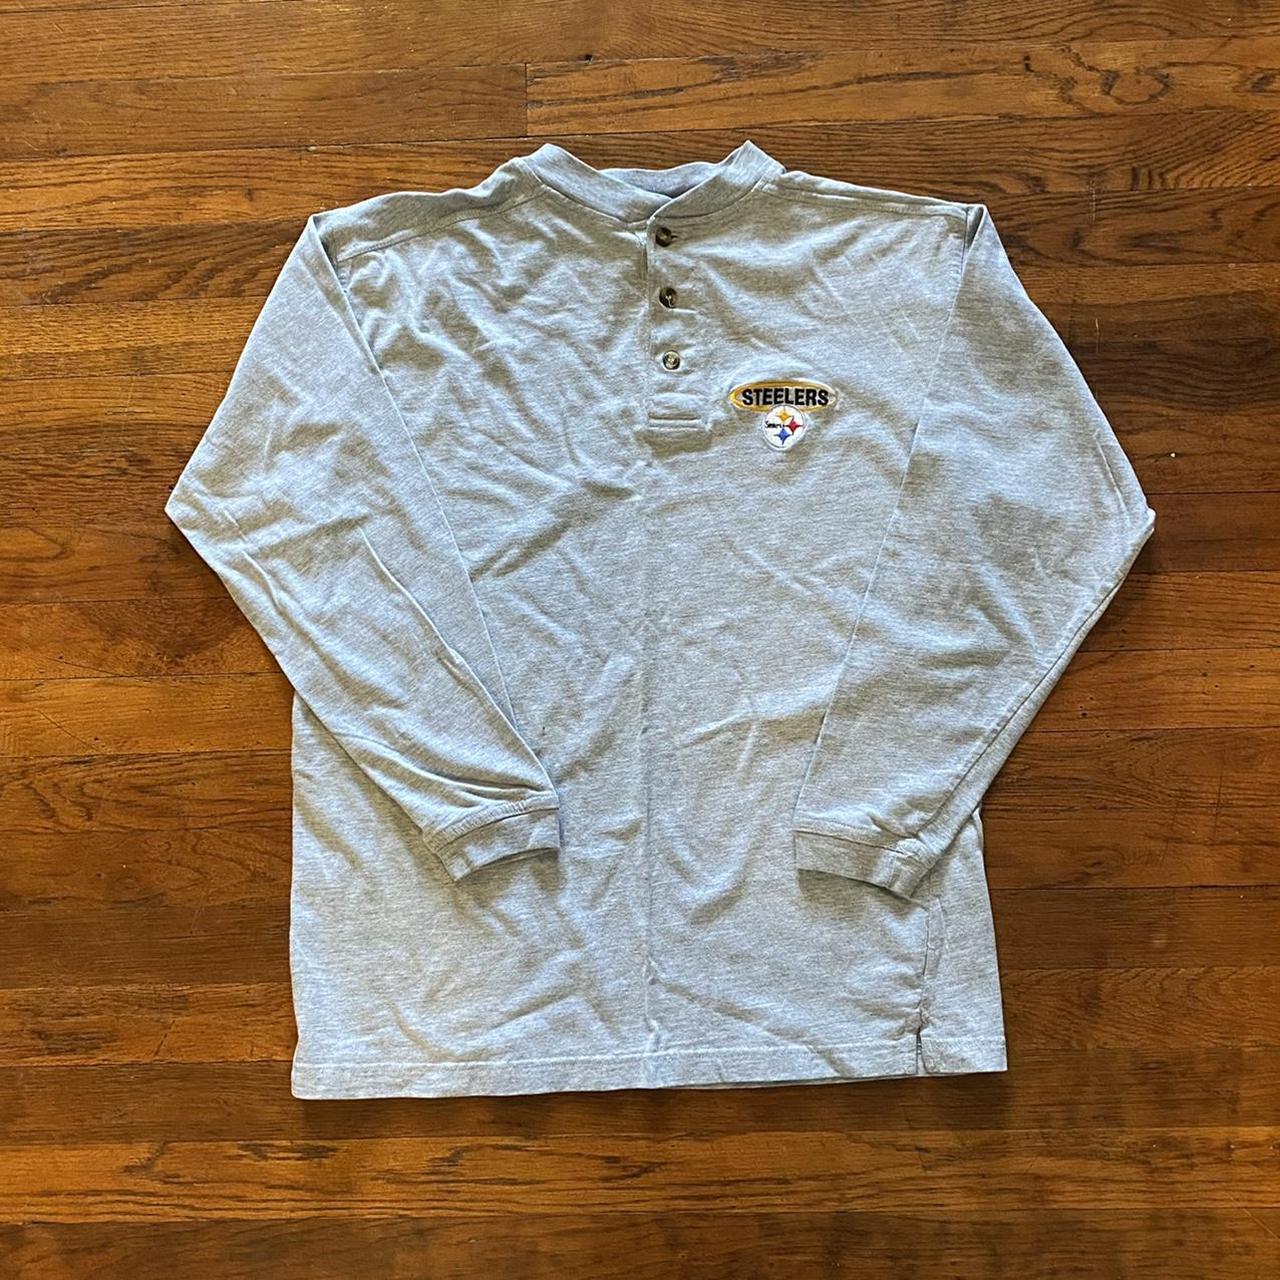 Vintage Pittsburgh Steelers Shirt. Grey henley long - Depop